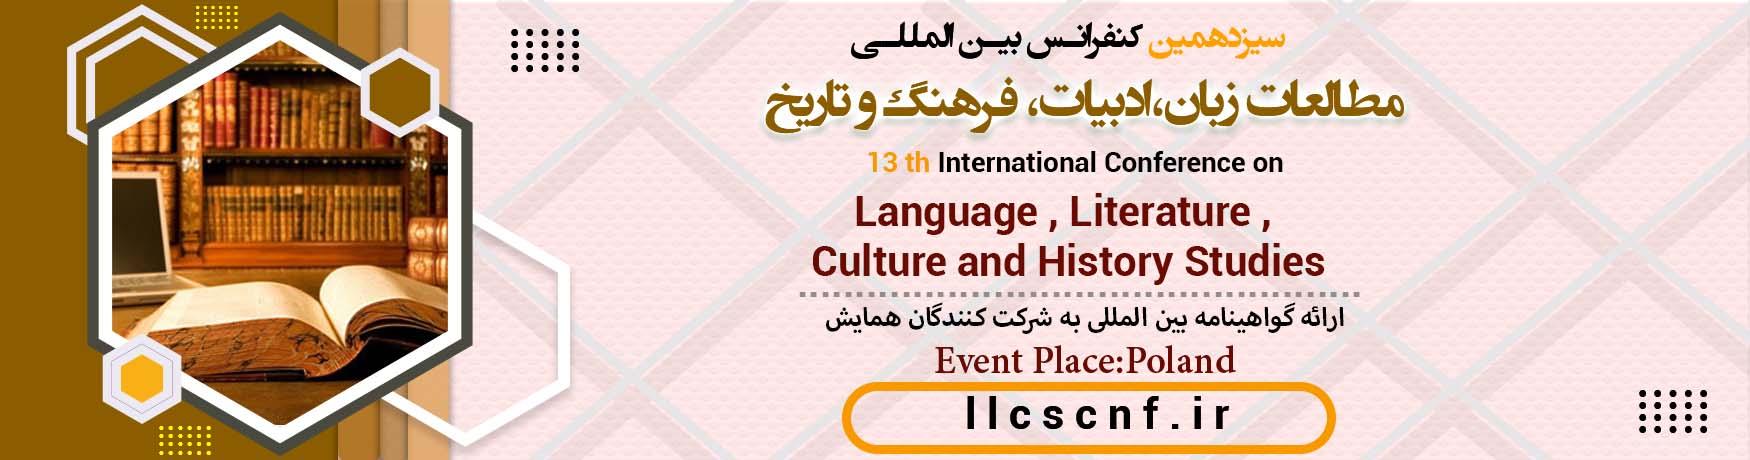 کنفرانس بین المللی مطالعات زبان،ادبیات، فرهنگ و تاریخ